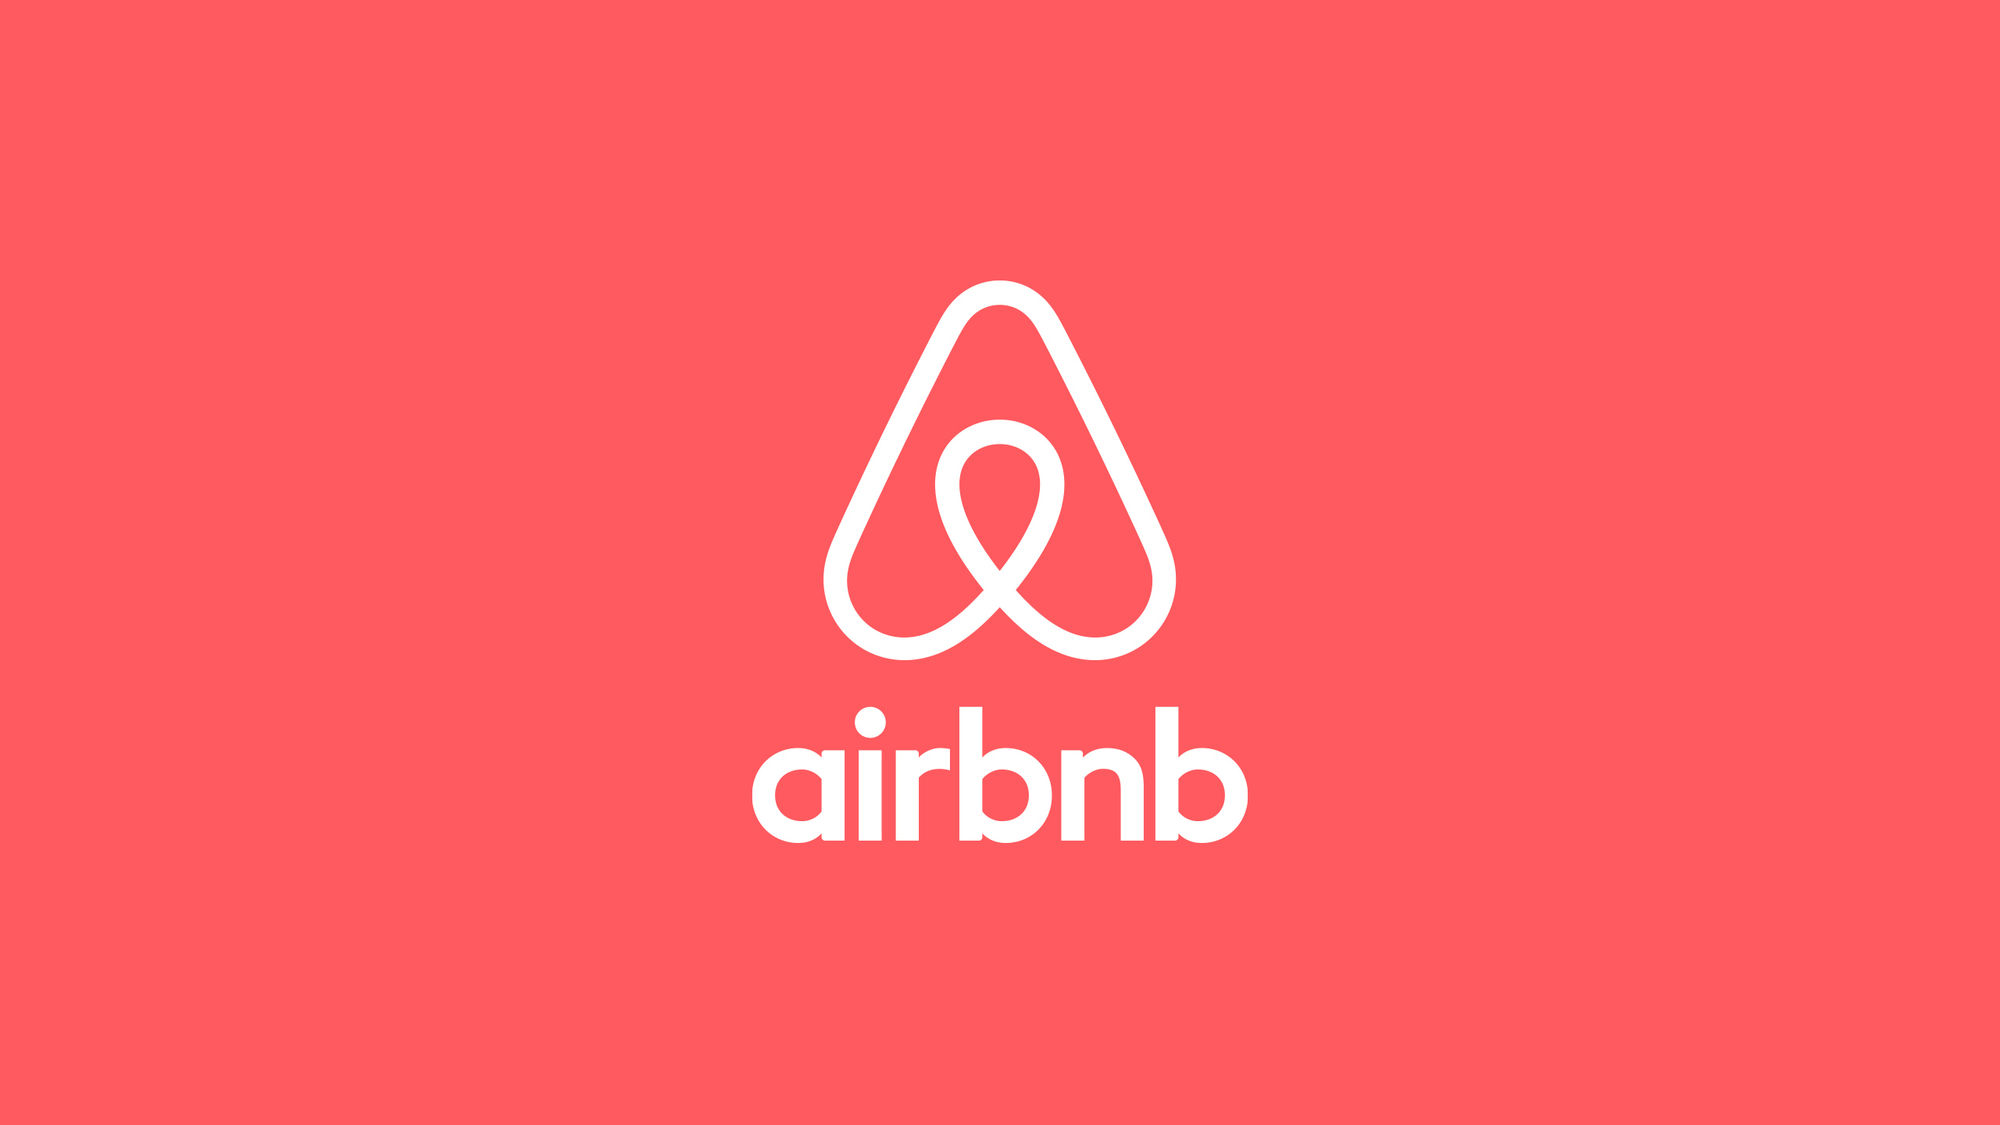 airbnb_billboard_01-2000x1125.jpeg